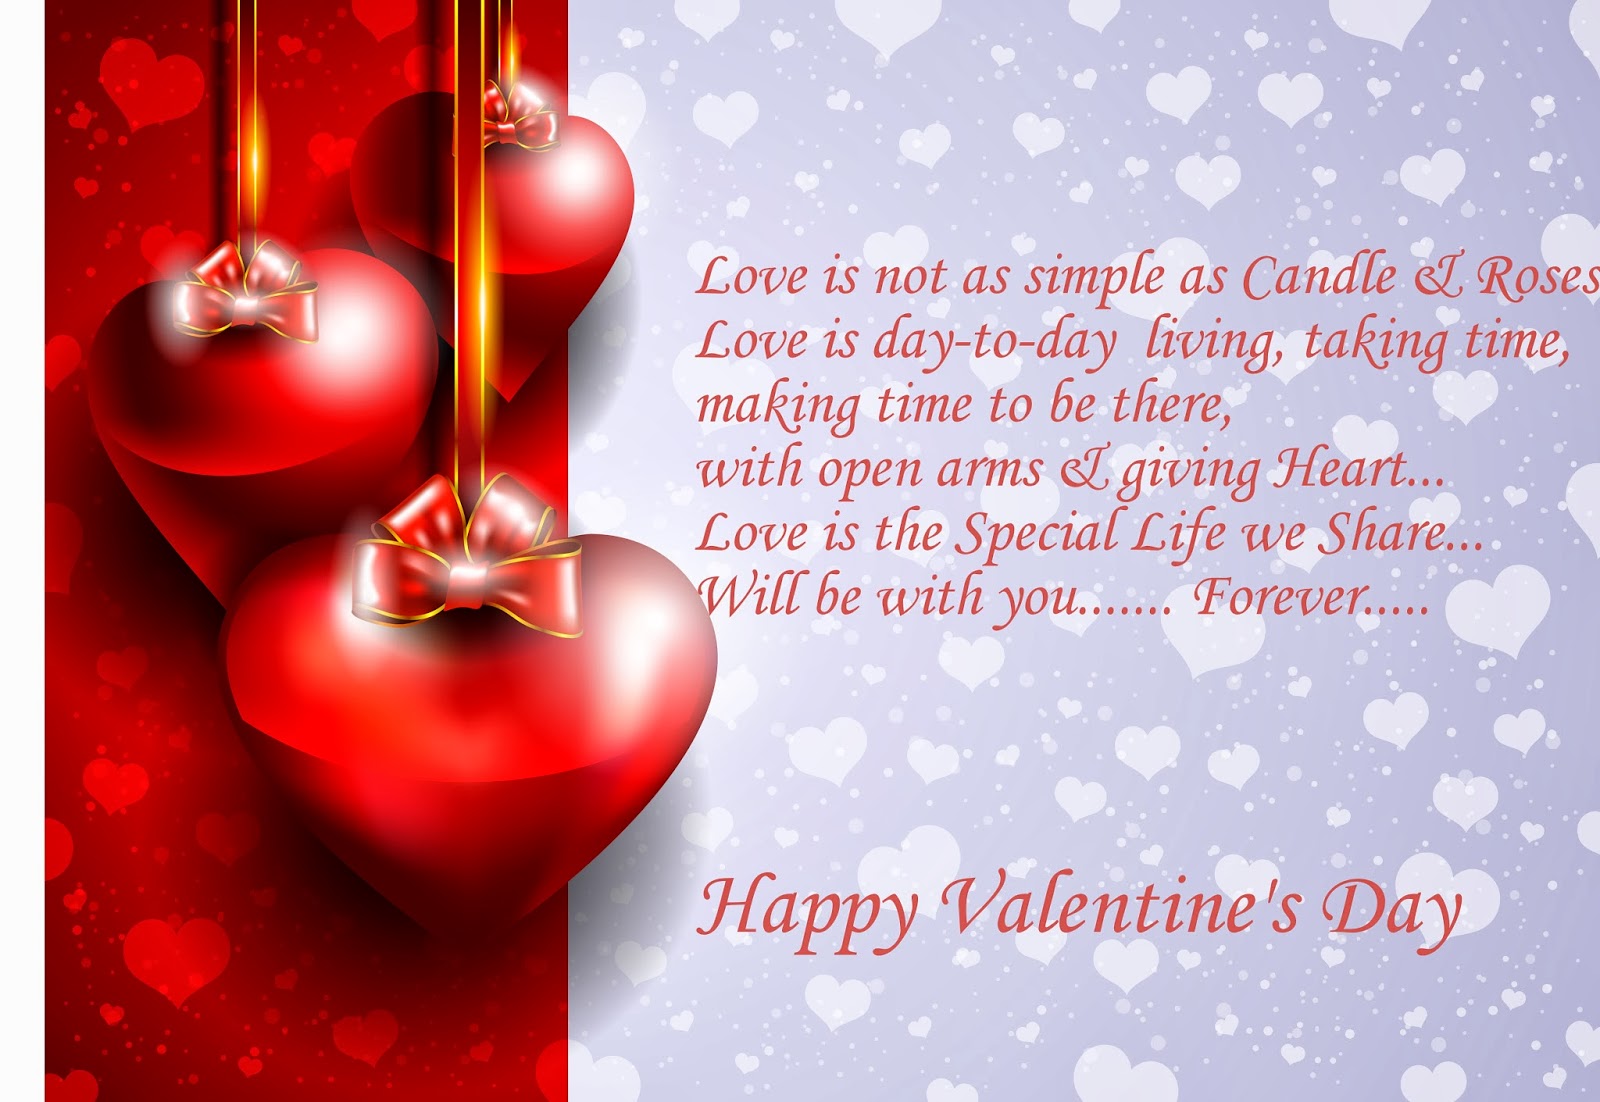 ImagesList.com: Romantic Valentines Quotes, 5